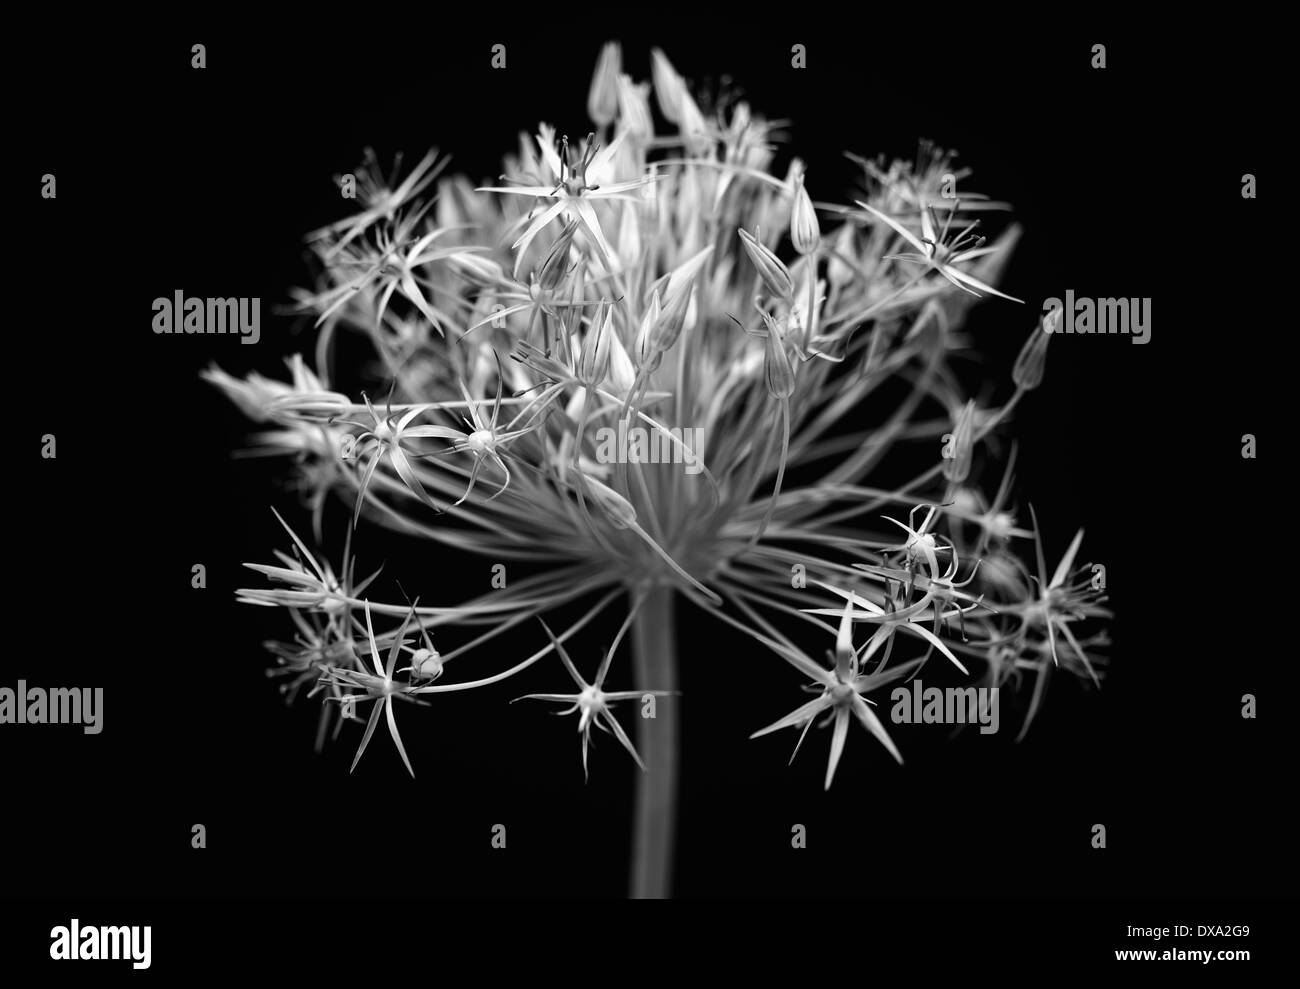 Lauch, Allium Christophii, schwarz und weiß Eröffnung Blume Licht gegen einen einfarbigen schwarzen Hintergrund erscheinen. Stockfoto